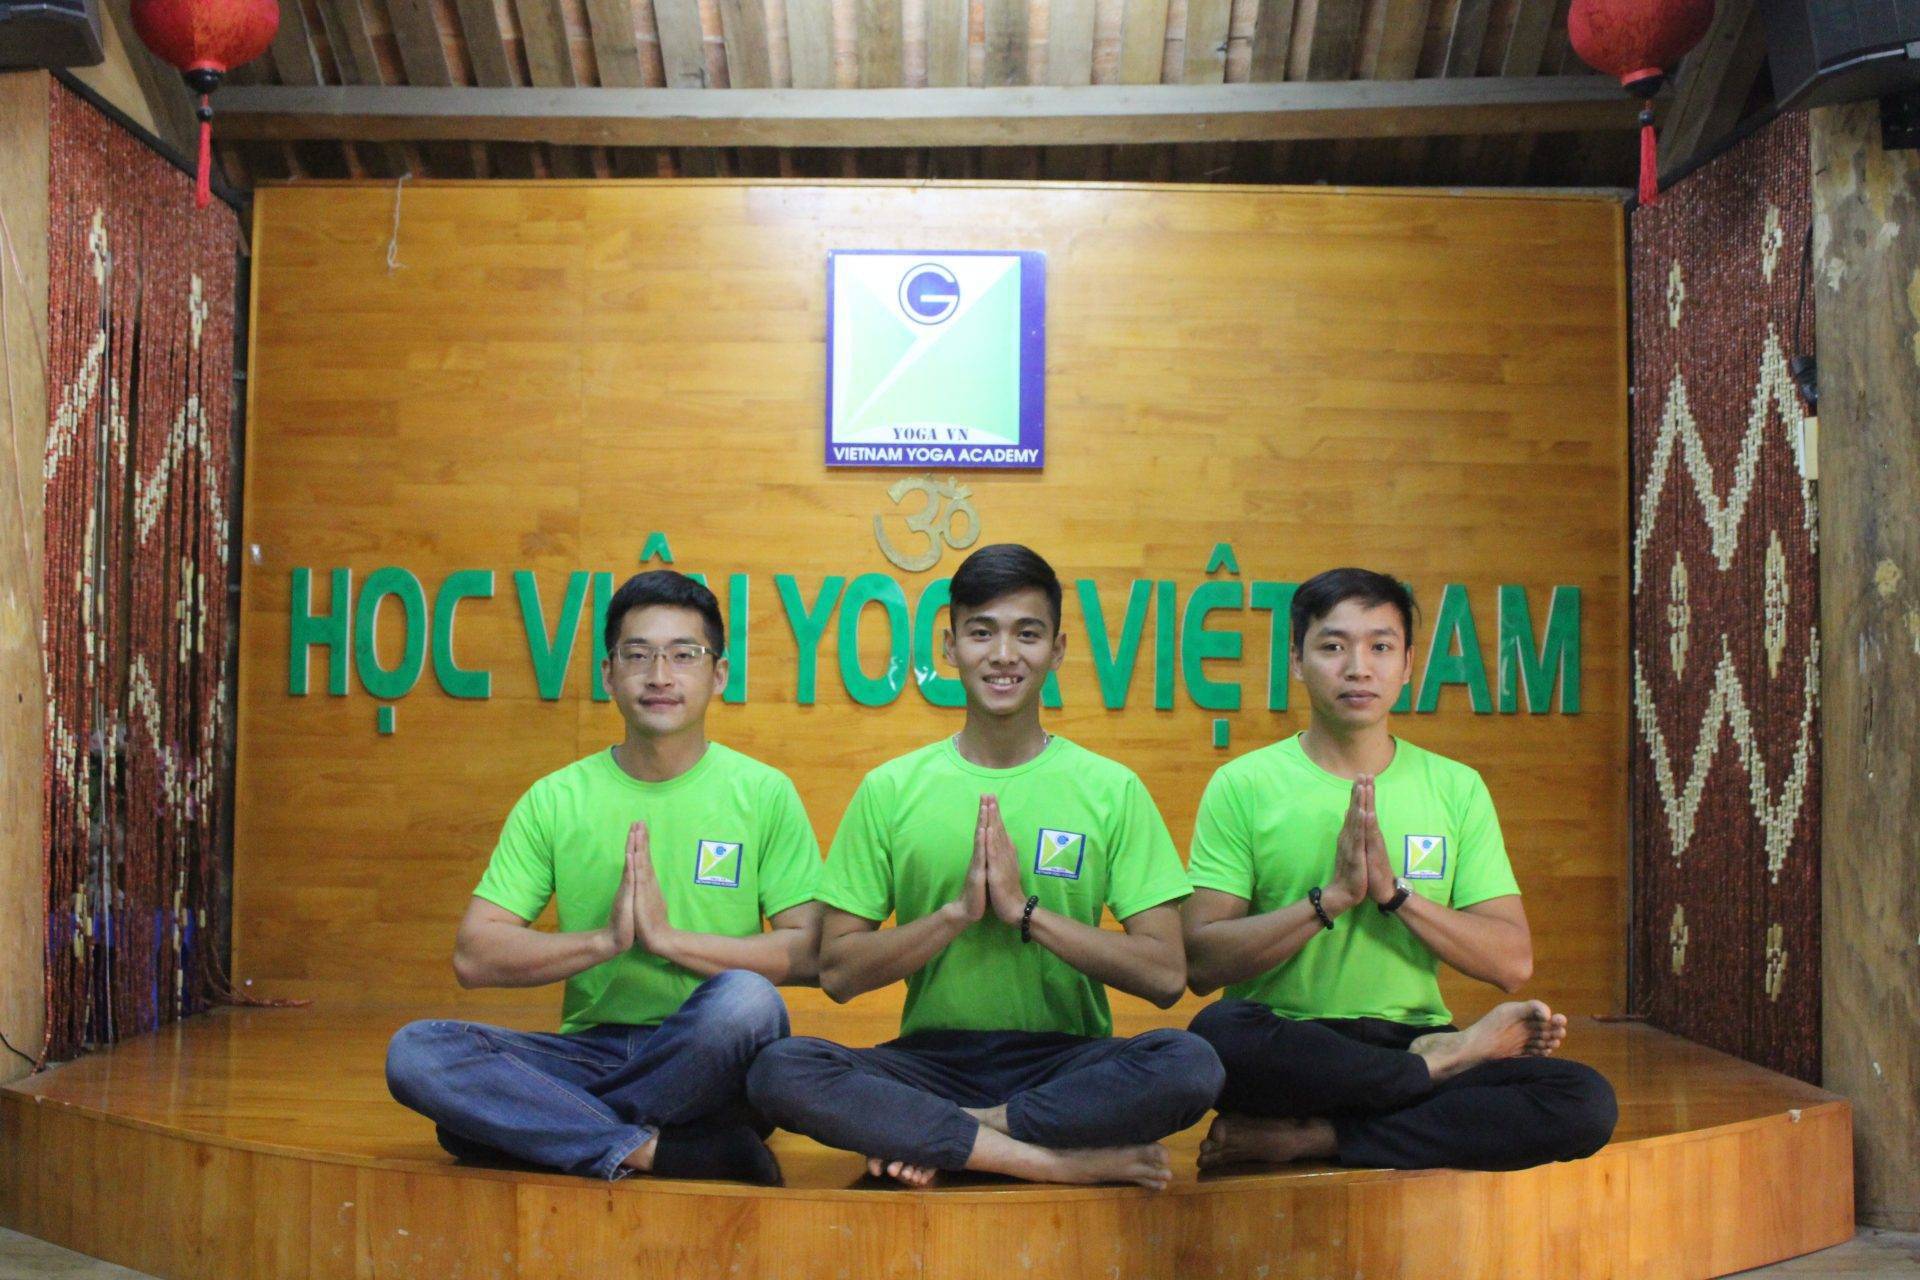 TÌm kiếm một nơi học giáo viên Yoga ở Hoàng Mai